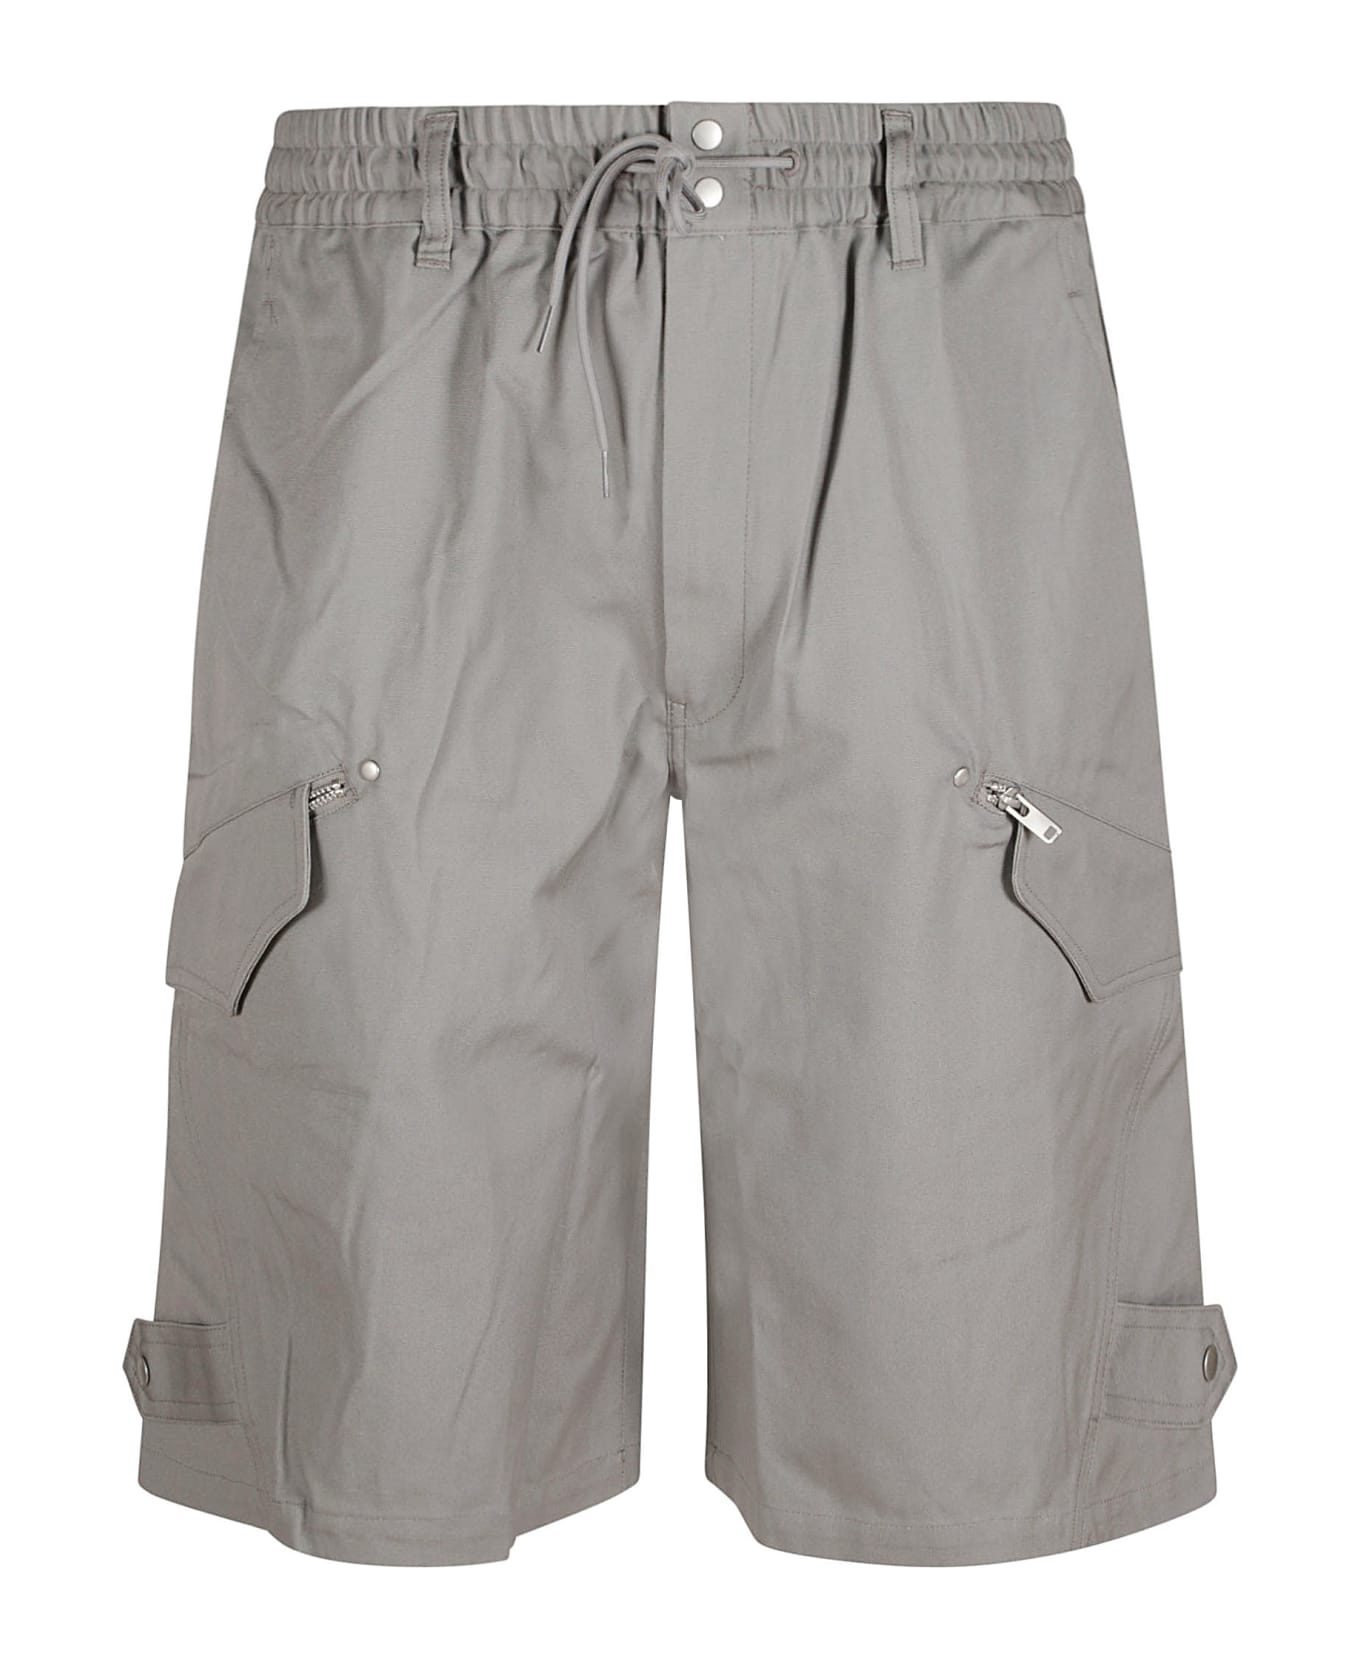 Y-3 Wrkwr Shorts - CHSOG